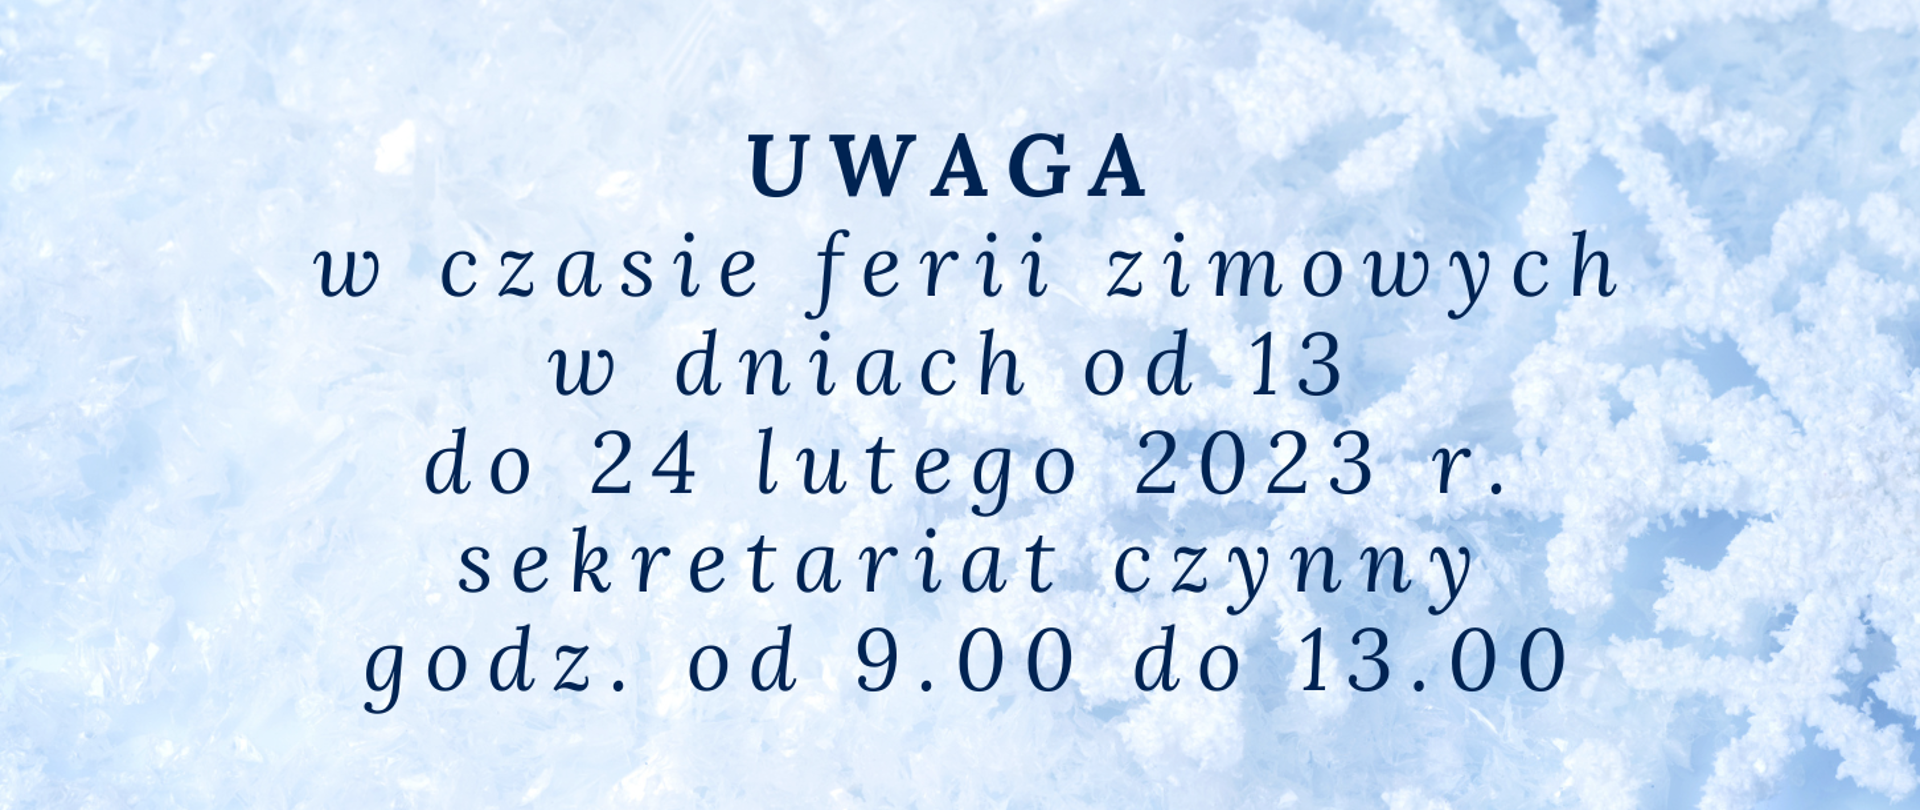 Grafika płatków śniegu na jasnym biało-niebieskim tle z tekstem " UWAGA w czasie ferii zimowych w dniach od 13 do 24 lutego 2023 r. sekretariat czynny godz. od 09:00 do 13:00.